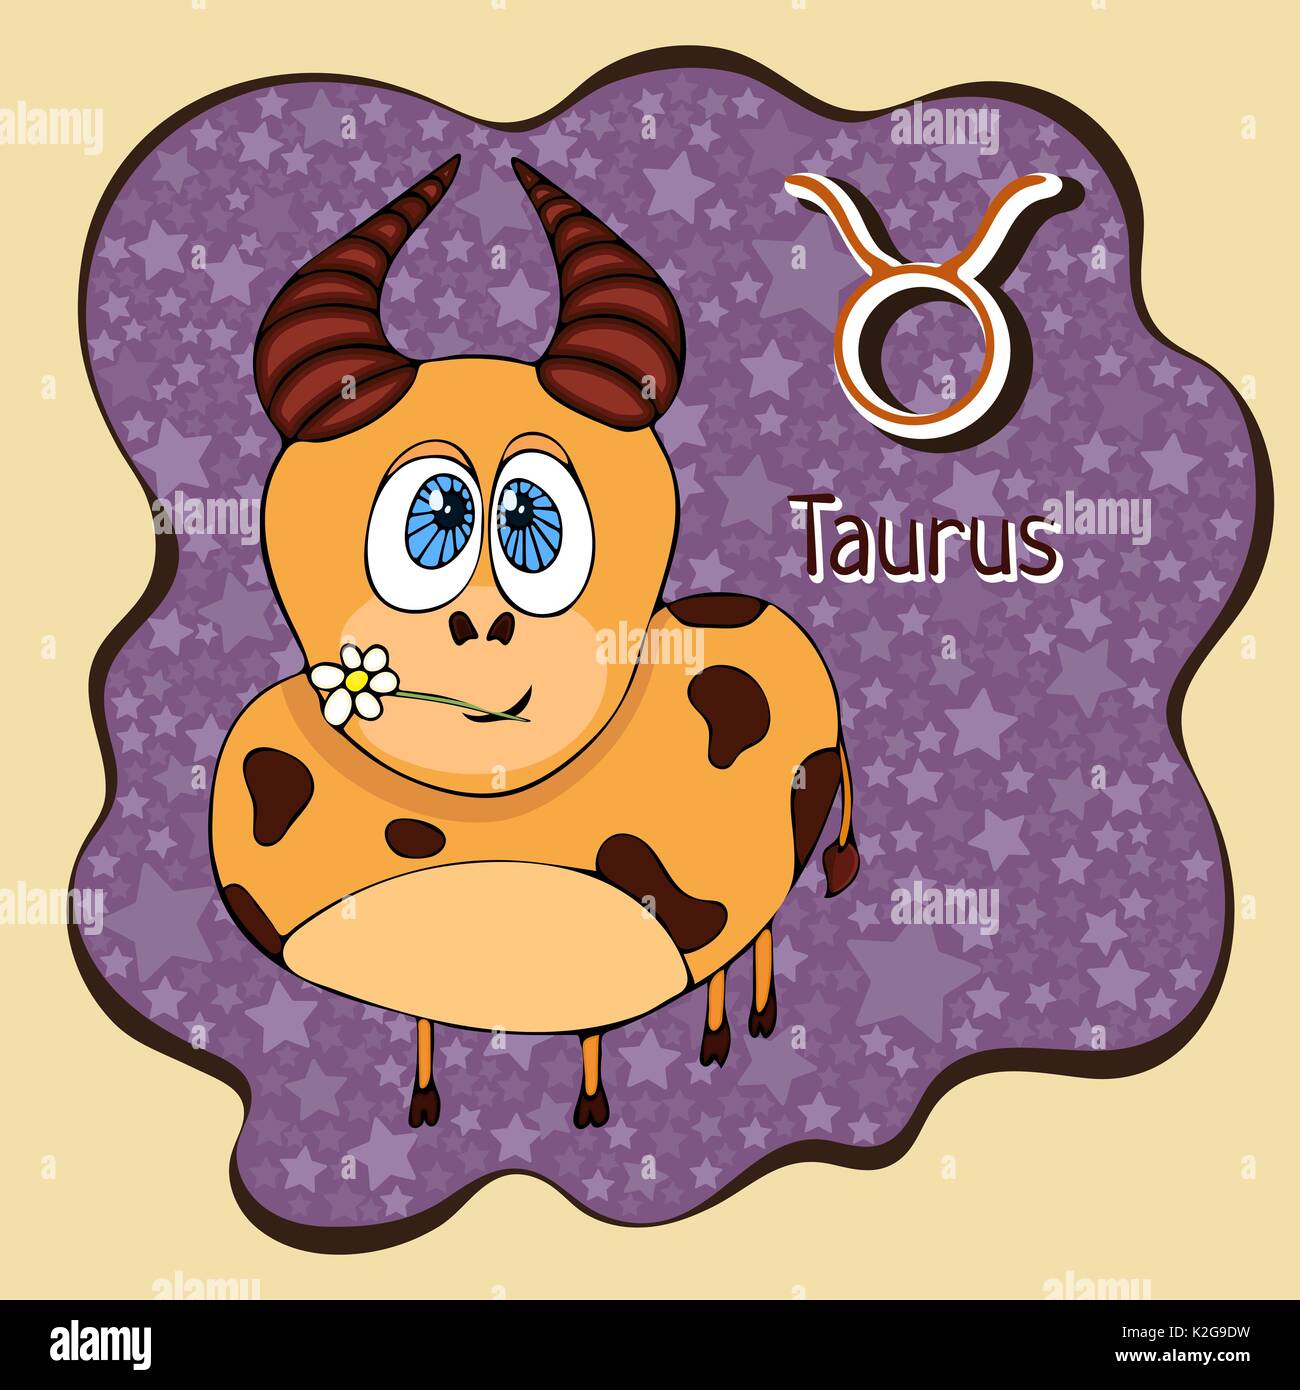 Segno zodiacale cartoon Taurus, carattere astrologico, disegno a mano. Dipinto funny taurus nel telaio sotto forma di una definizione astratta viola macchia di inchiostro con ba Illustrazione Vettoriale